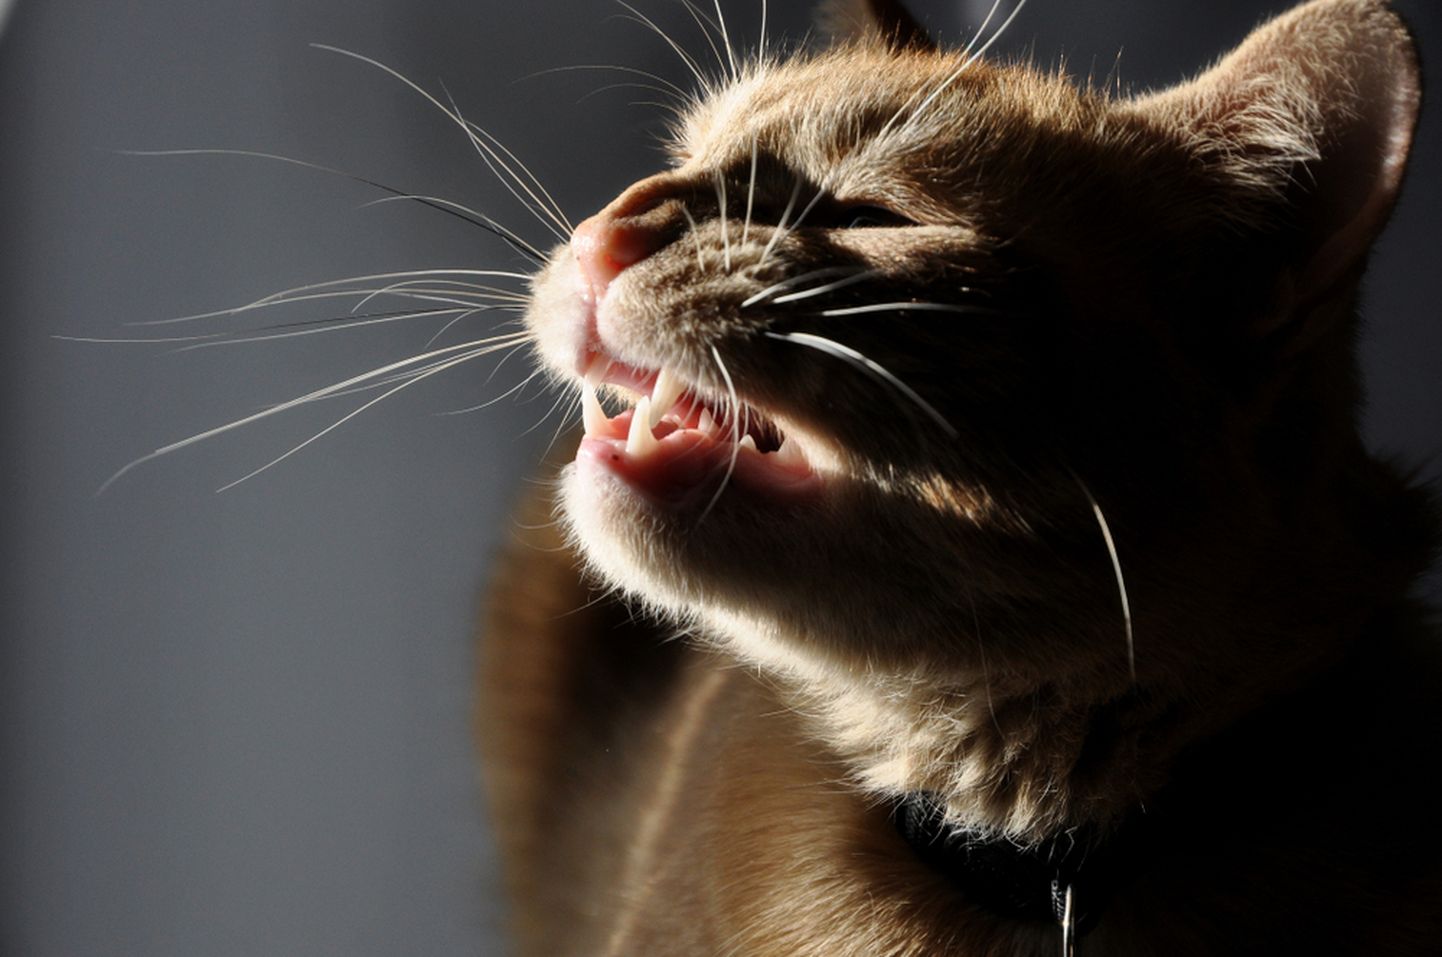 Aevastamine võib kassidel olla tavapärane reaktsioon tolmule, lendavatele karvadele ja muule ärritavale.